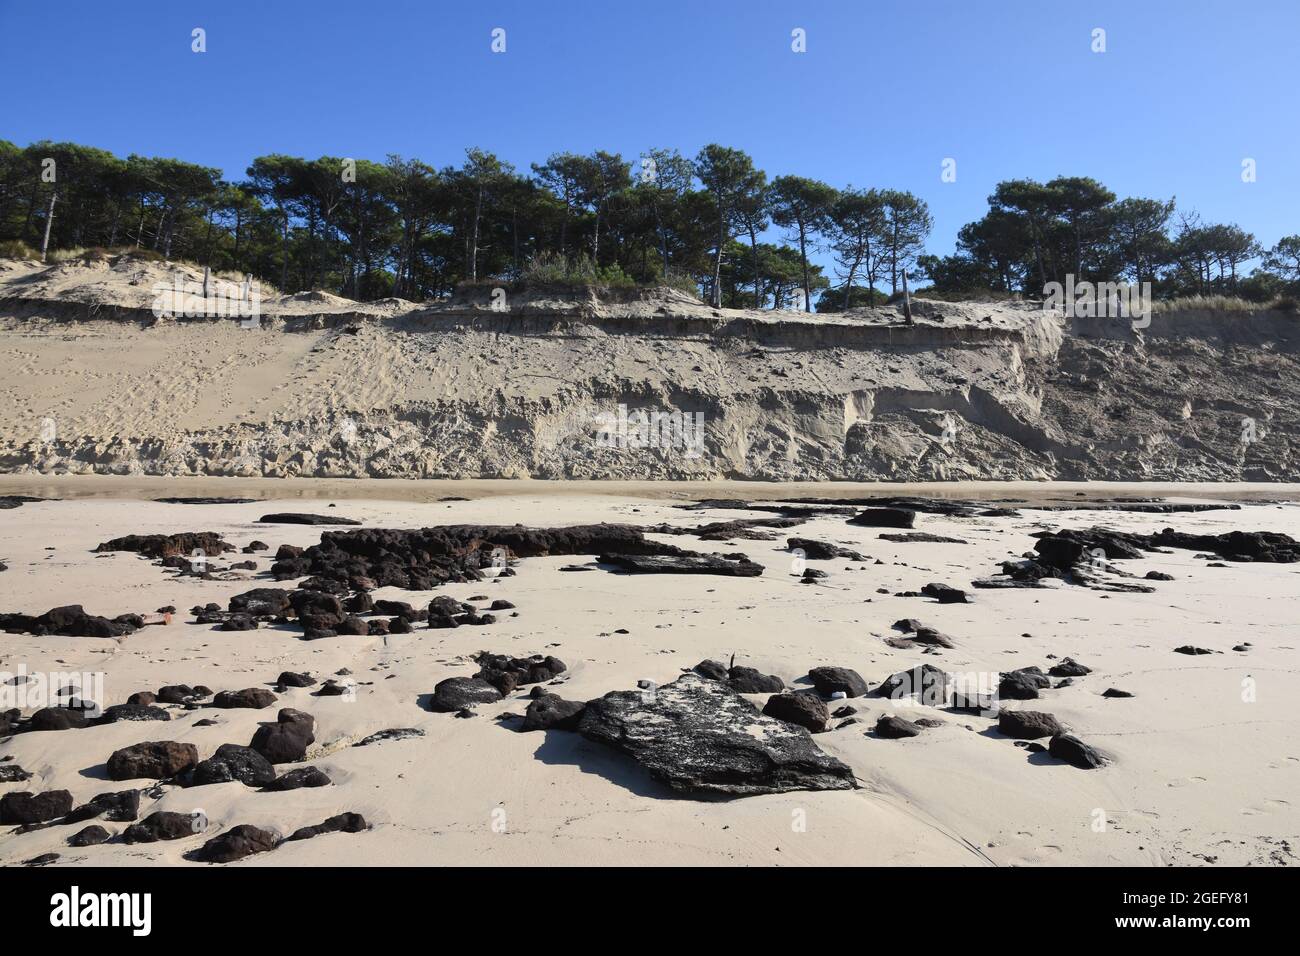 Francia, Aquitania, sulla costa atlantica l'aumento del livello dell'oceano e la durata delle tempeste favoriscono l'erosione delle spiagge e delle dune. Foto Stock